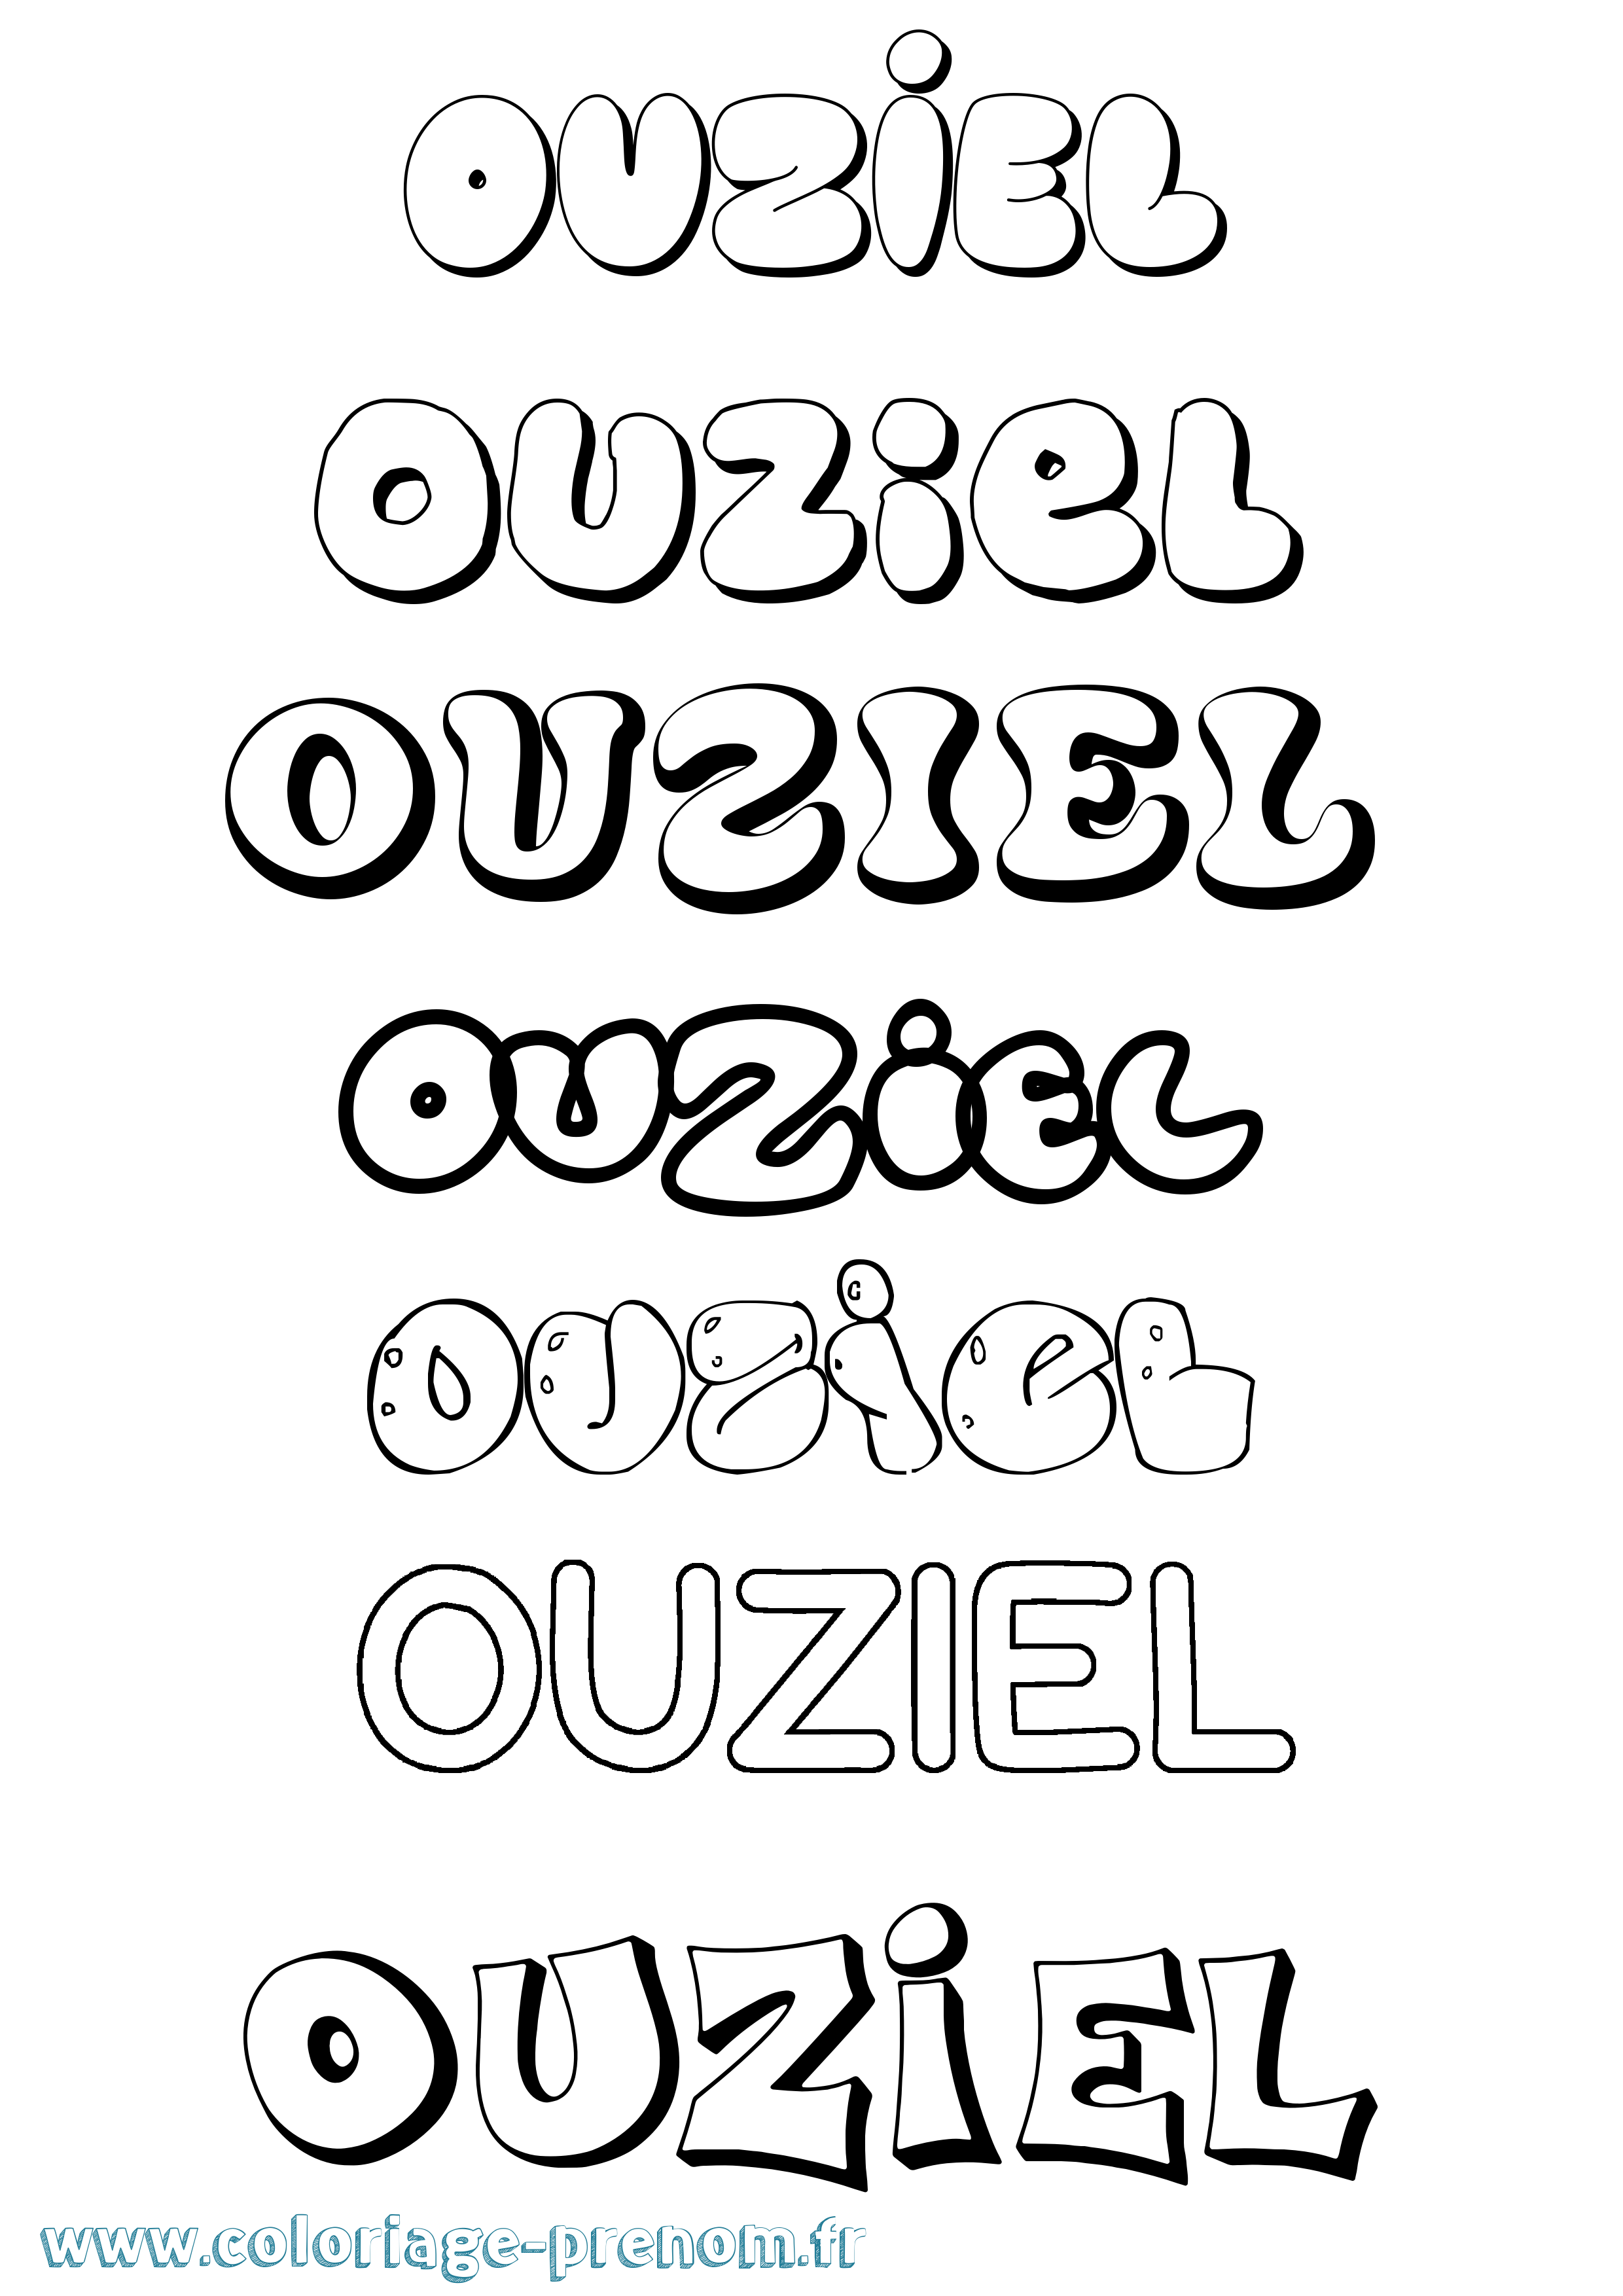 Coloriage prénom Ouziel Bubble